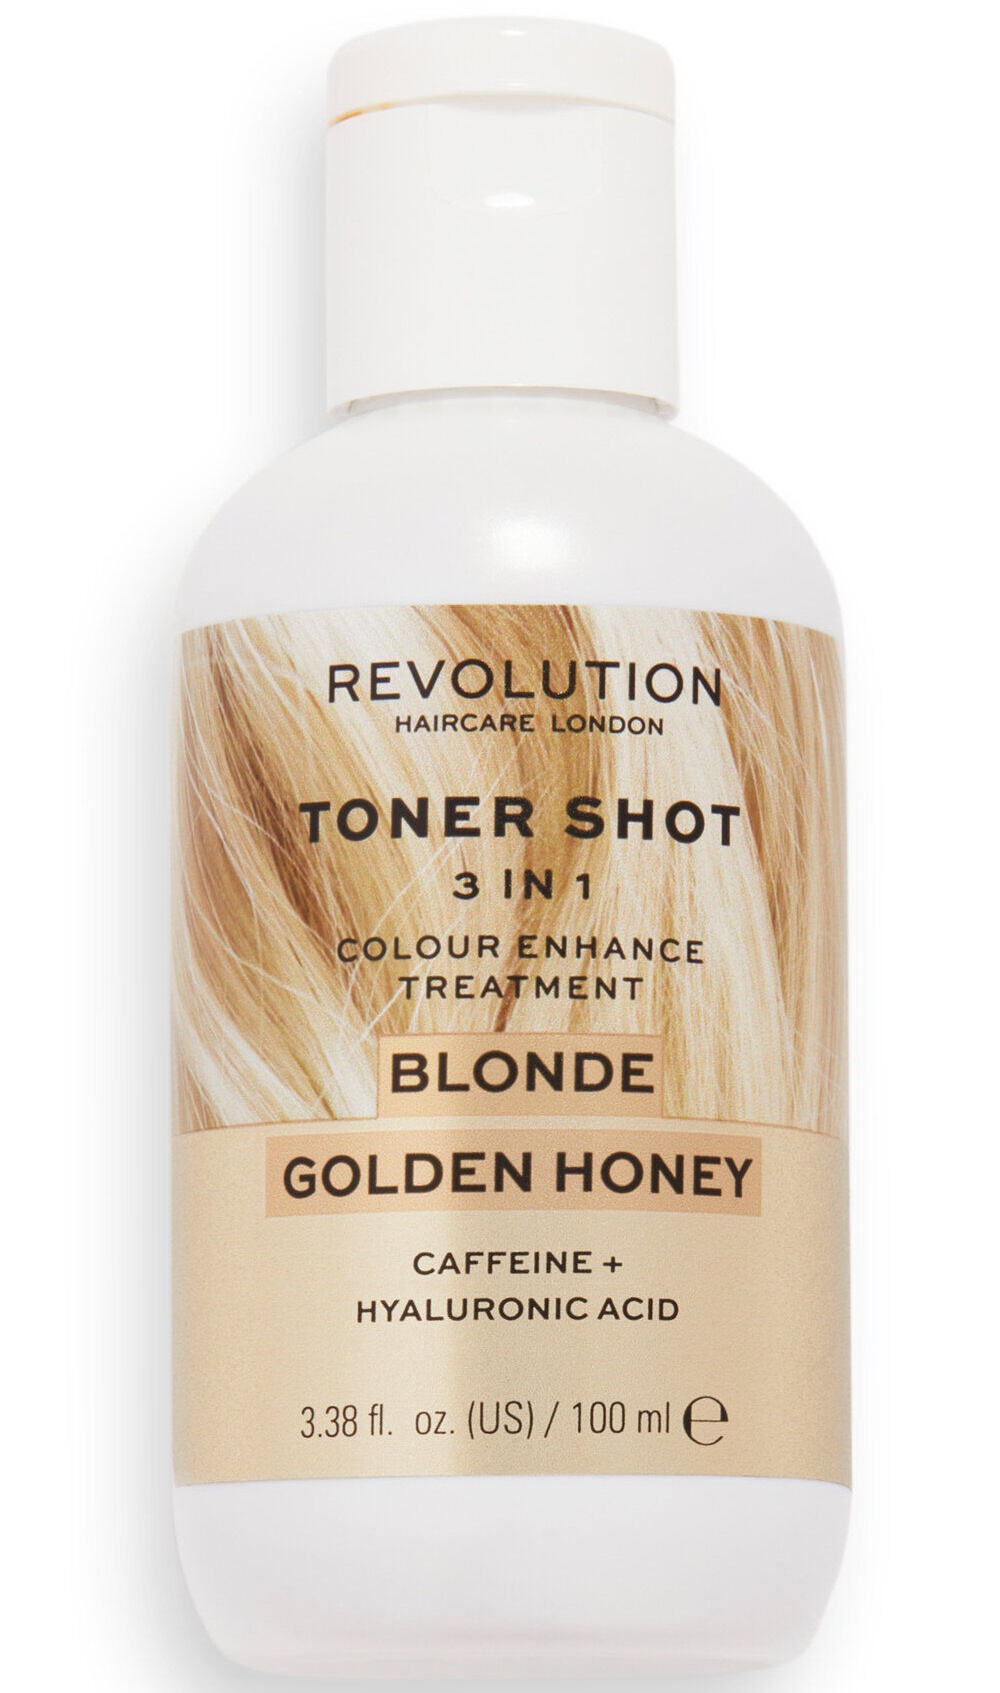 Revolution Haircare Toner Shot Blonde Golden Honey